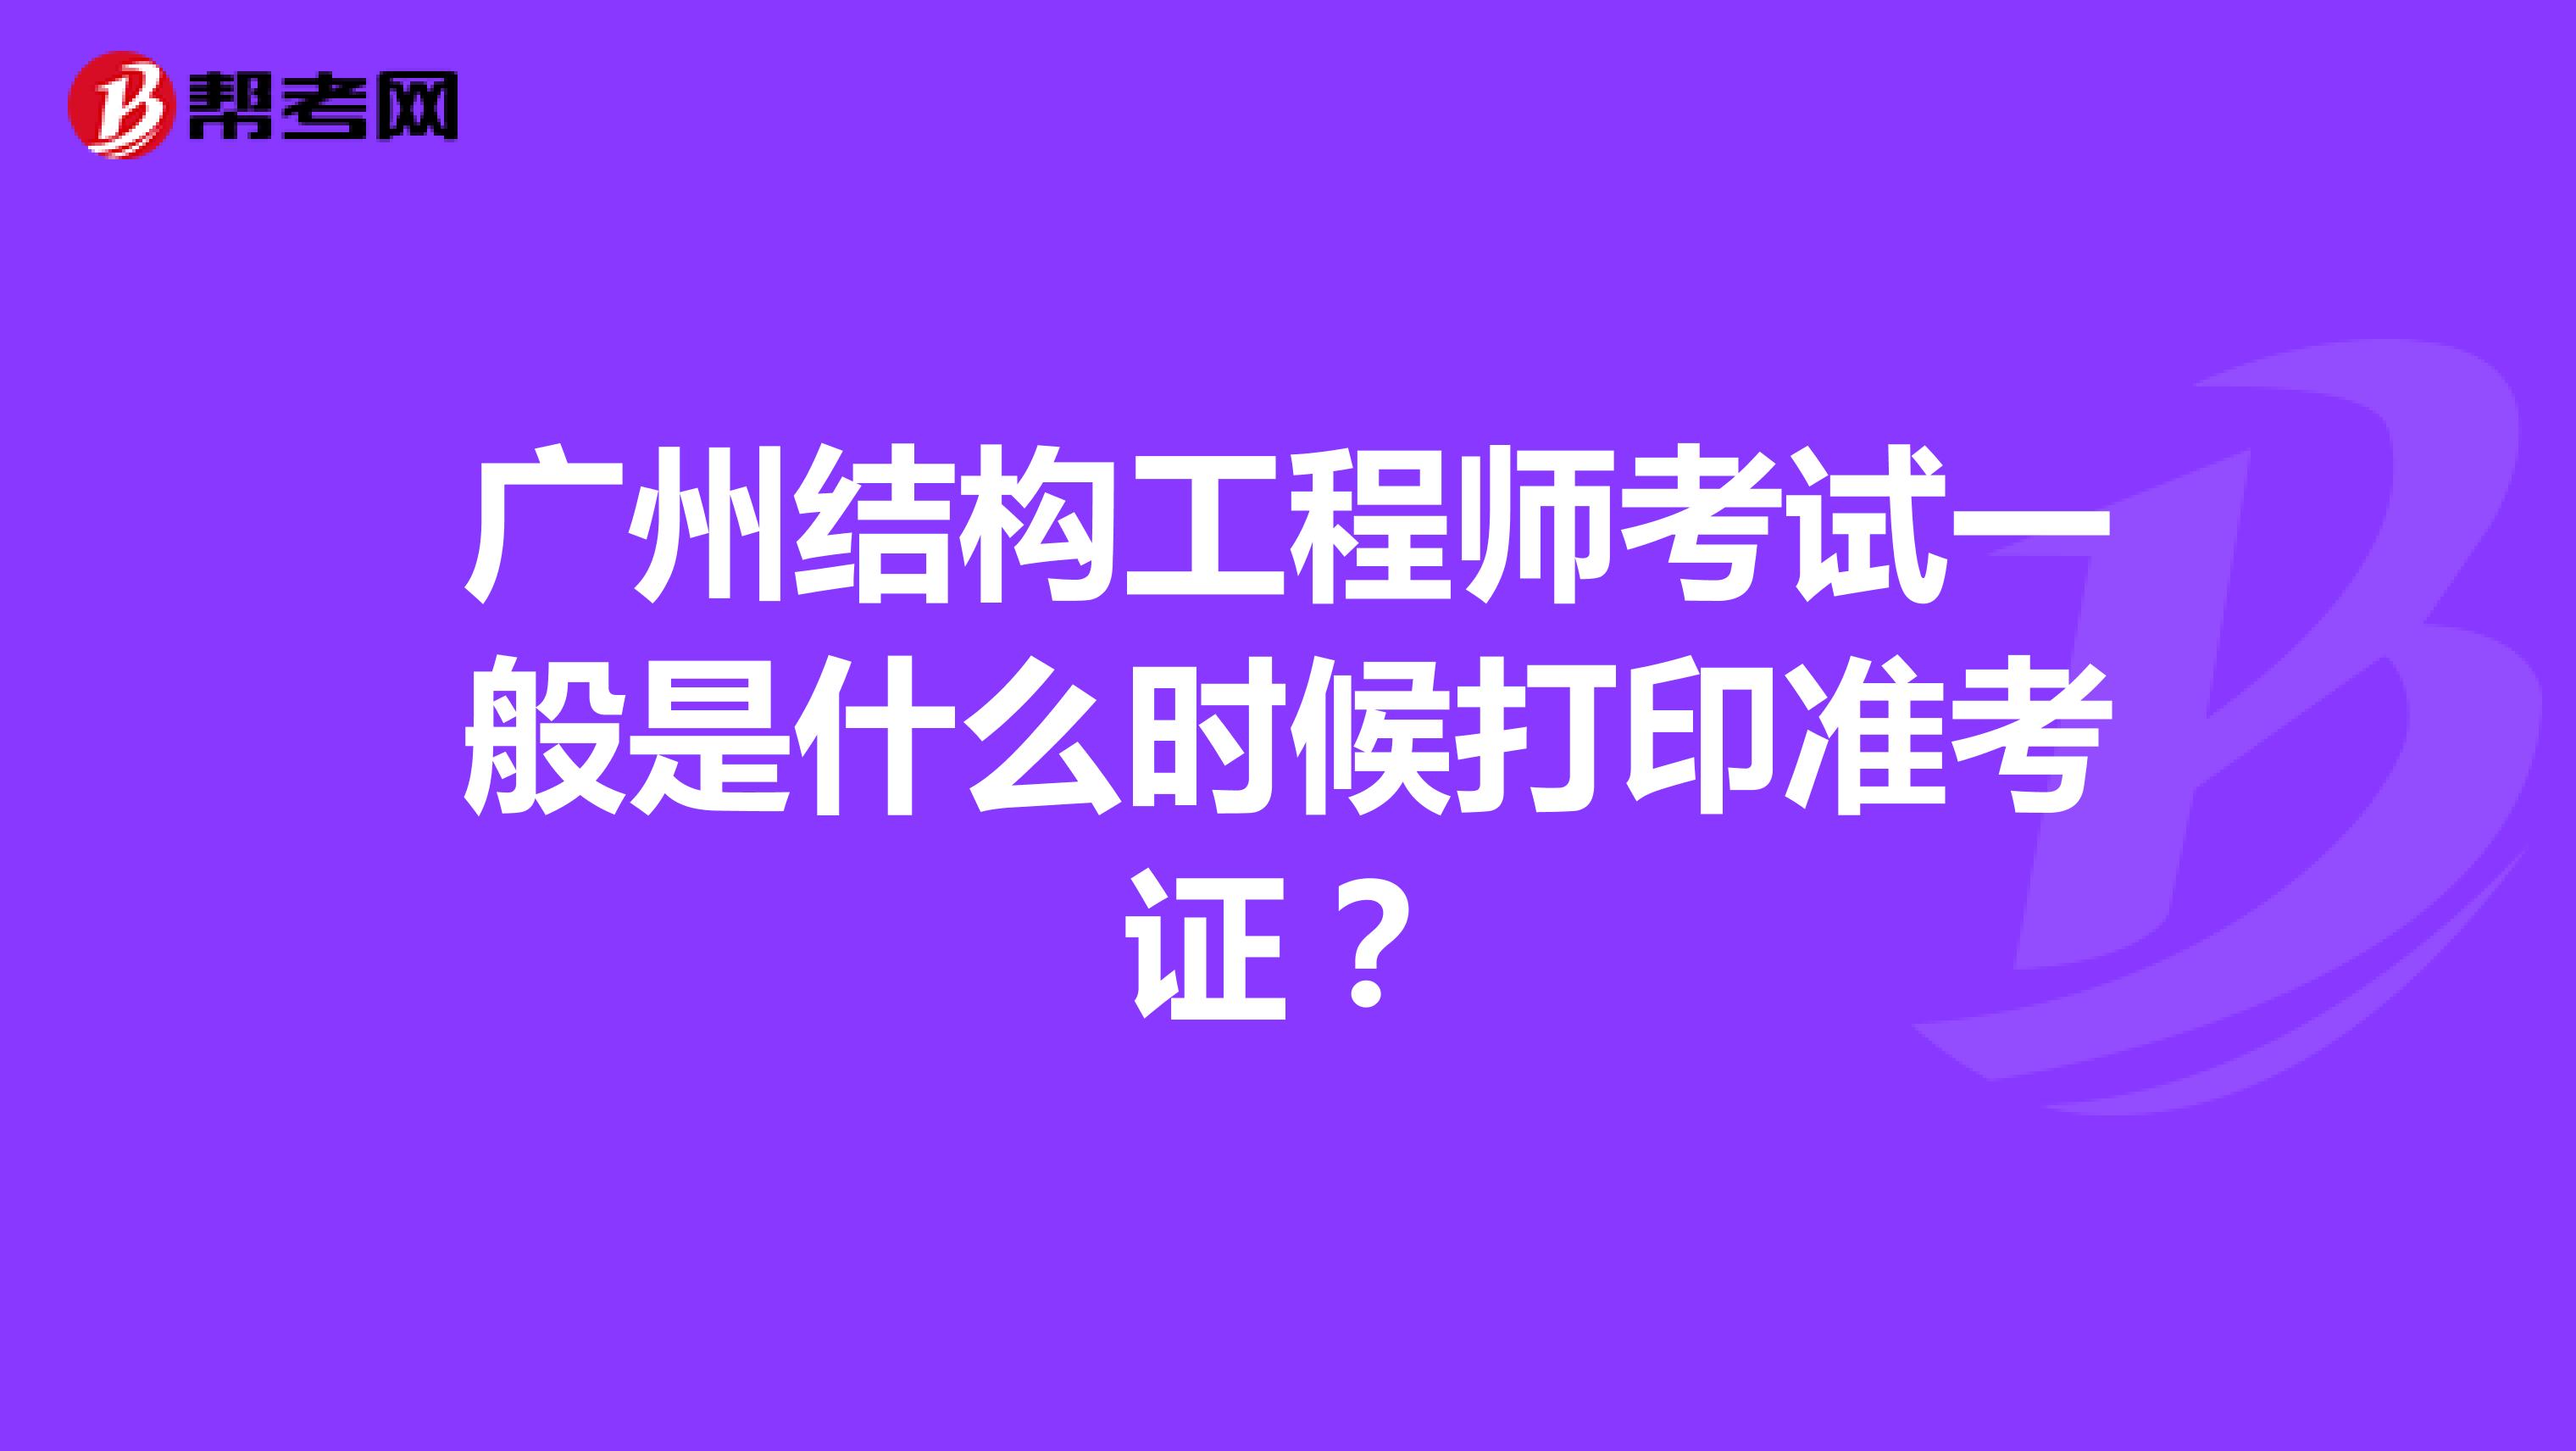 广州结构工程师考试一般是什么时候打印准考证？